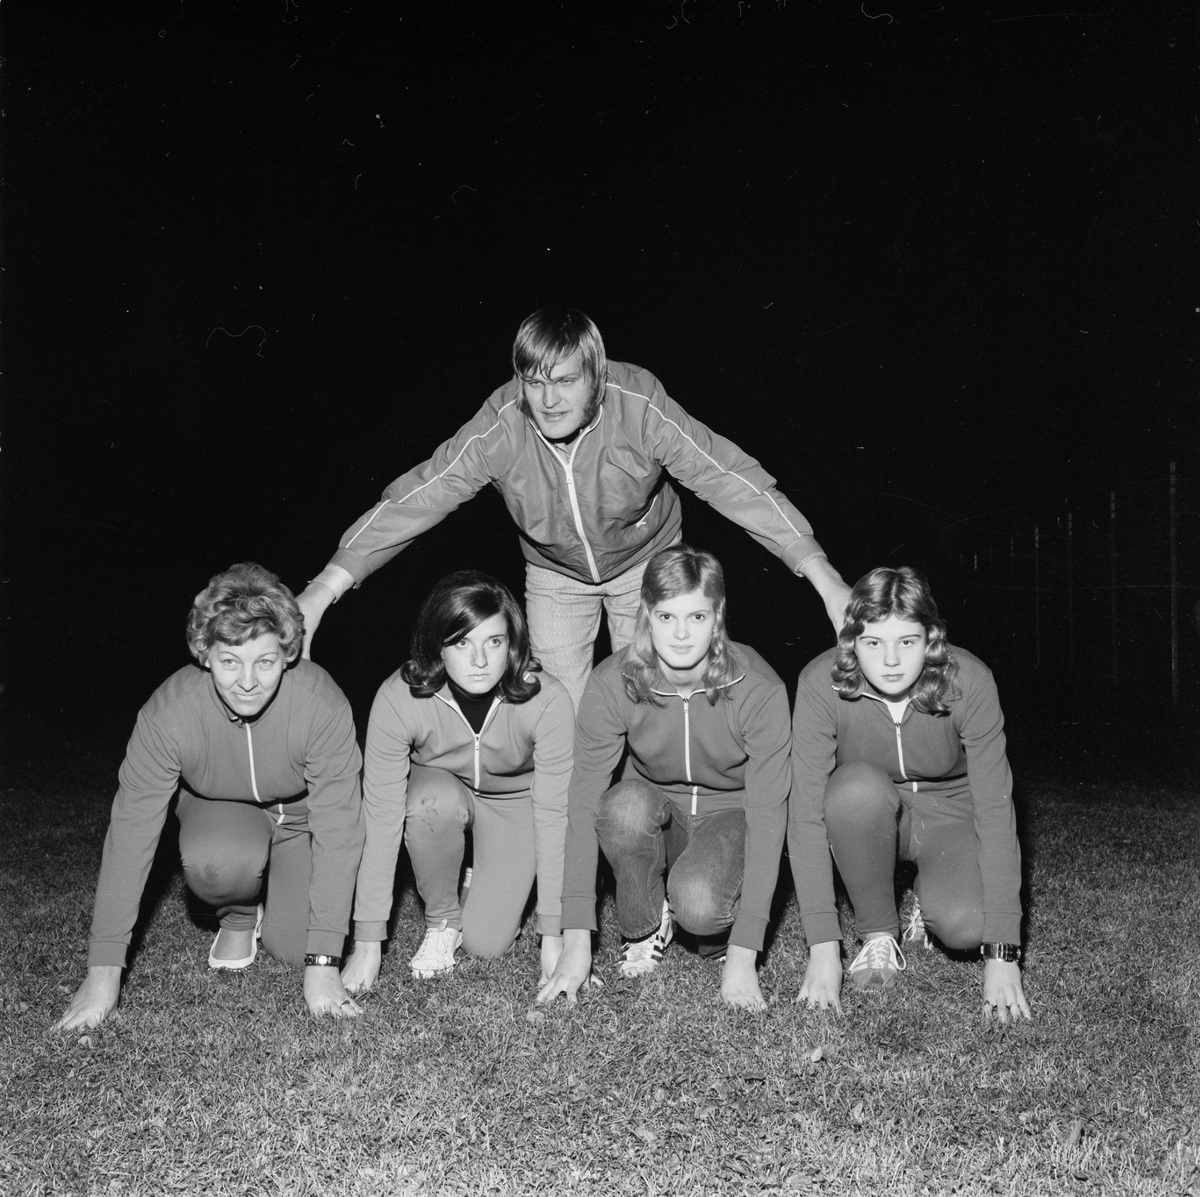 Damer hårdtränar för 1972 års seriefotboll, Tobo, Tegelsmora socken, Uppland, november 1971